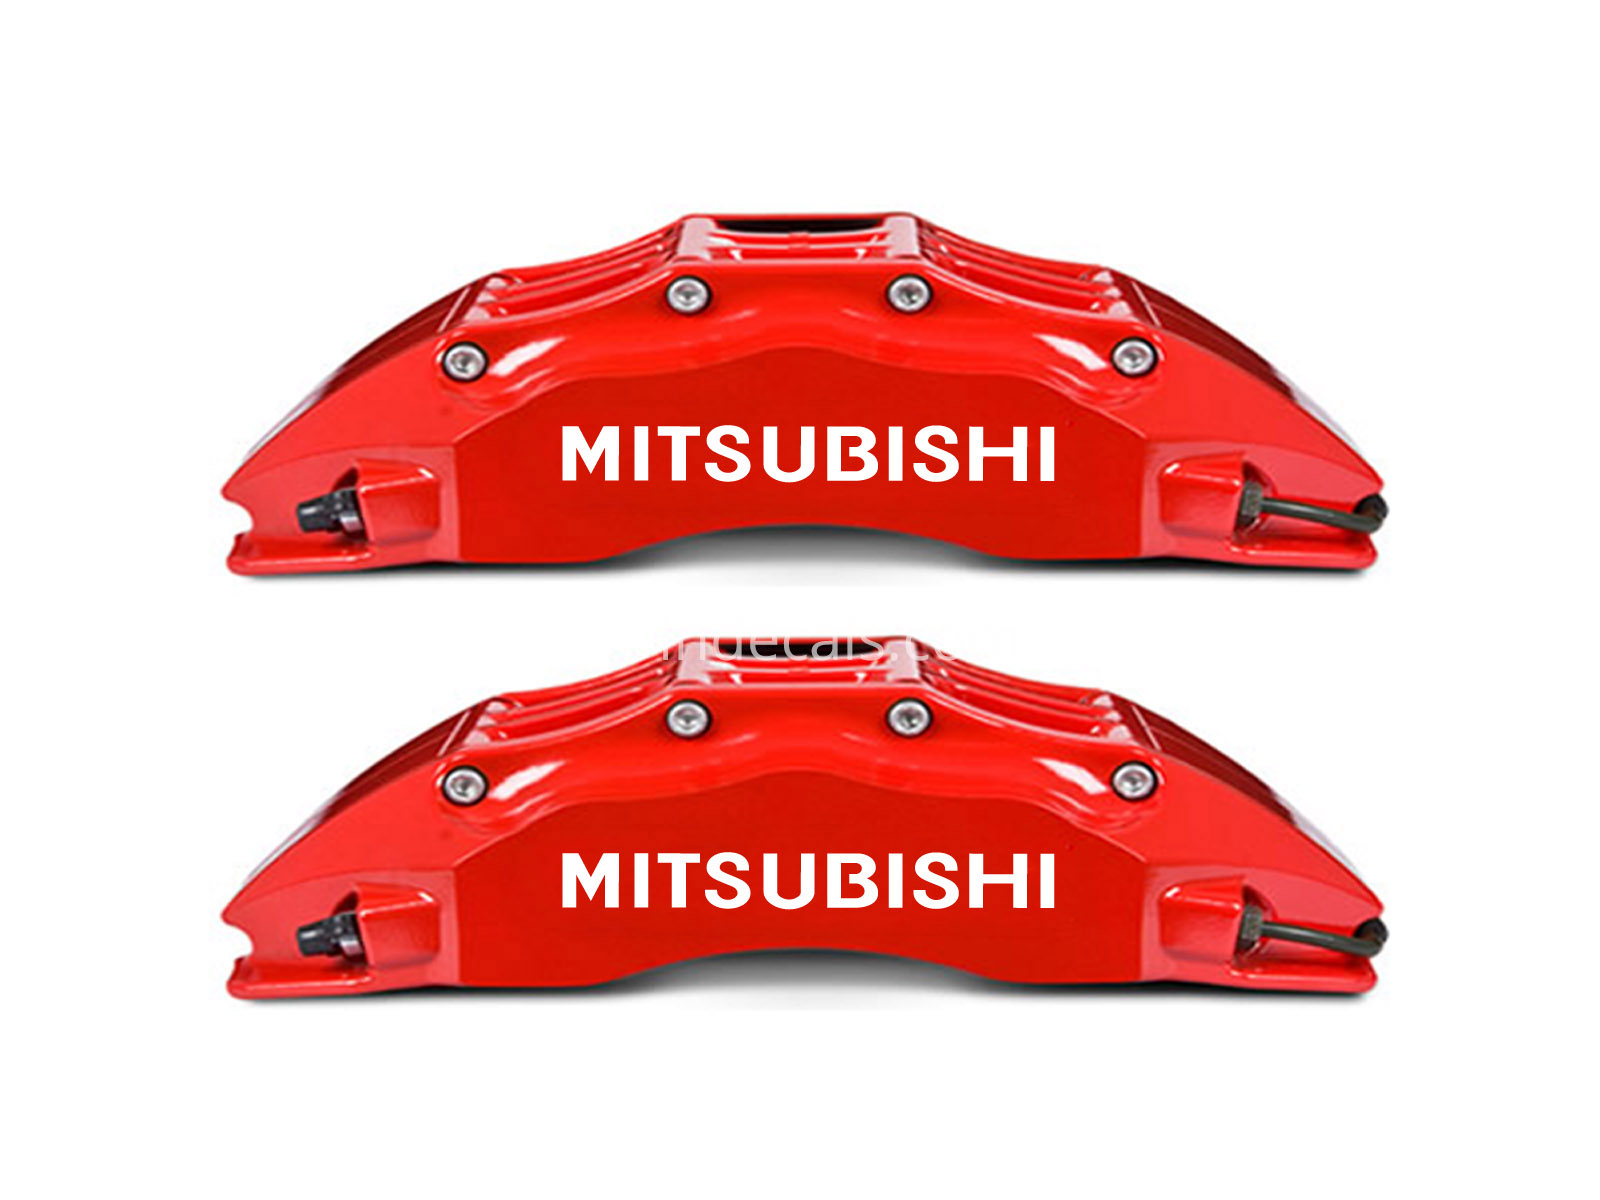 6 x Mitsubishi Stickers for Brakes - White